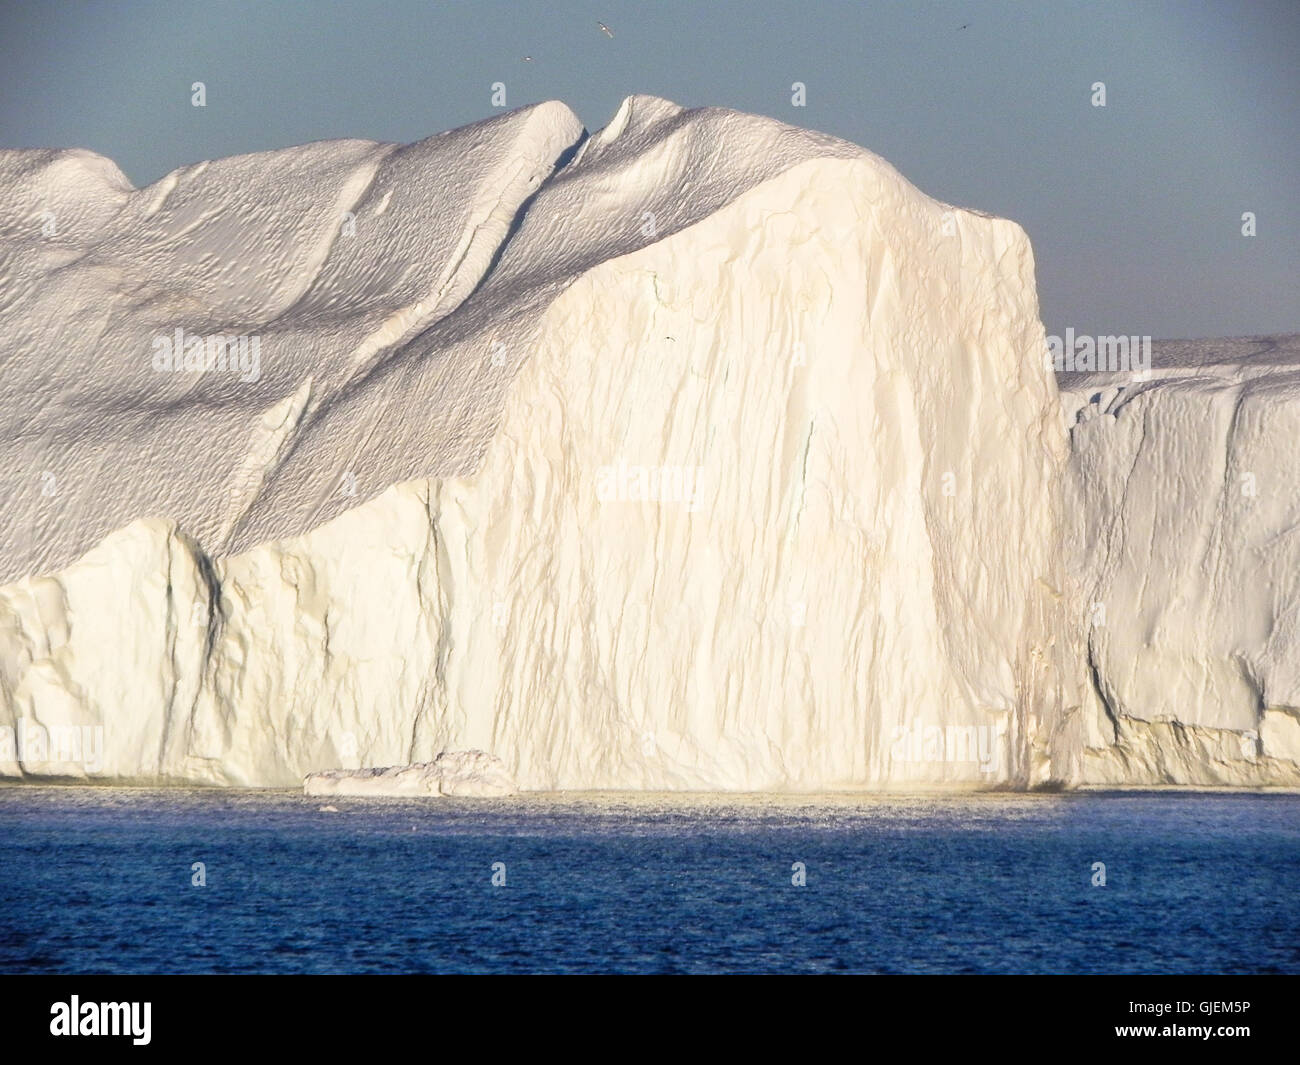 gigantic iceberg at Disko bay in Greenland Stock Photo